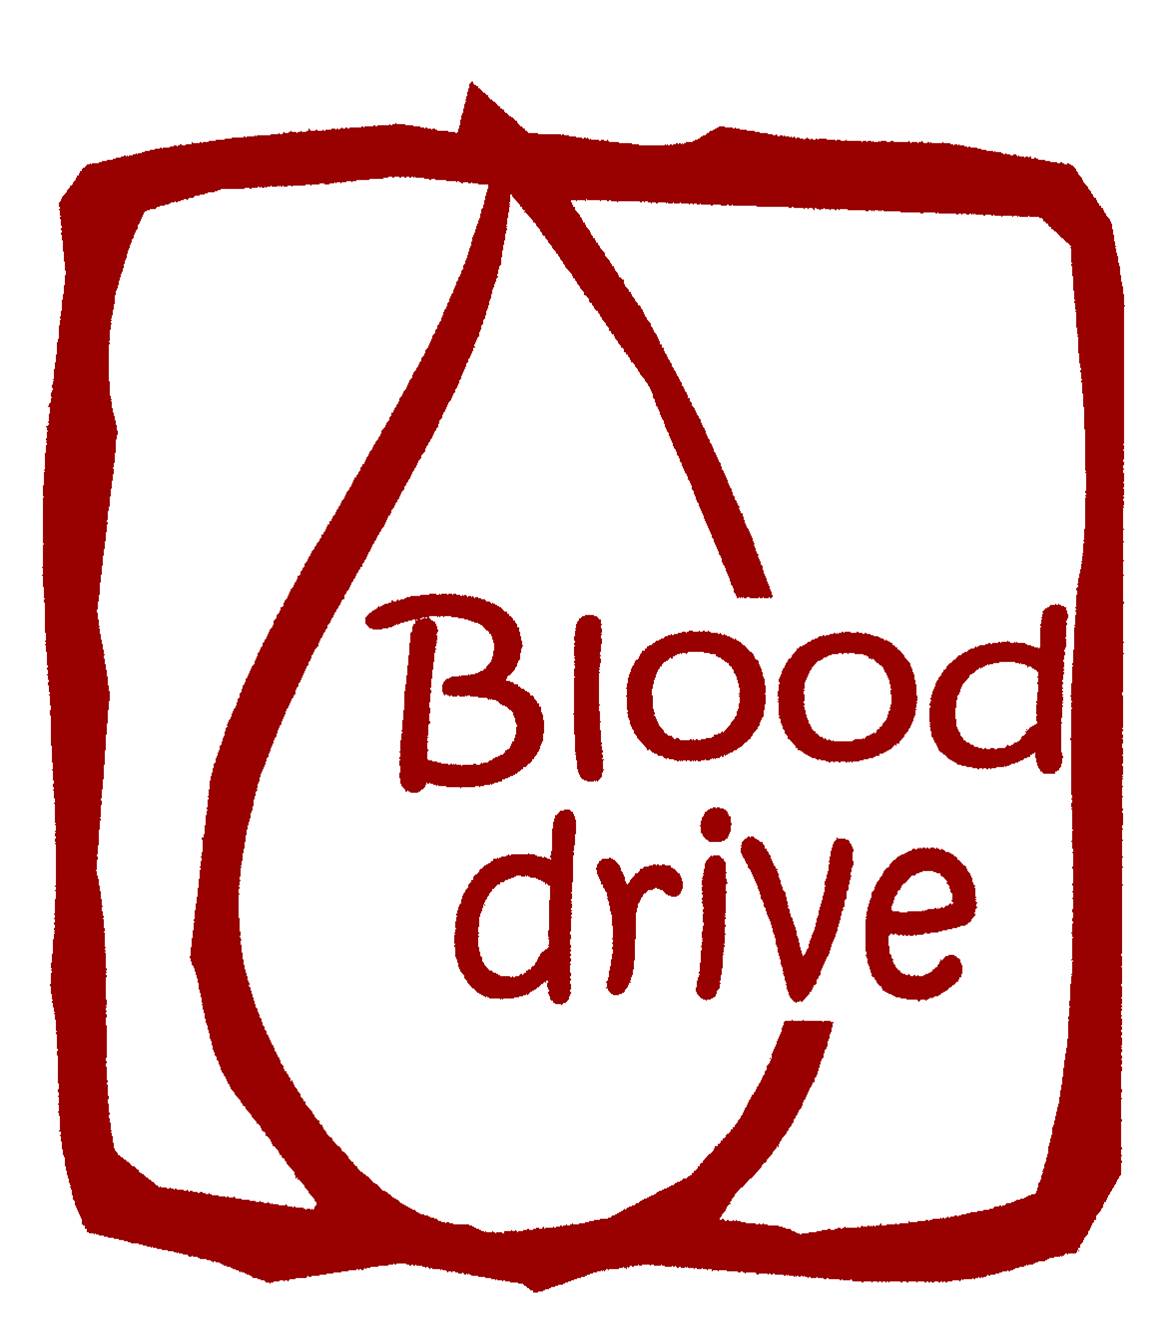 Blood drive images clip art